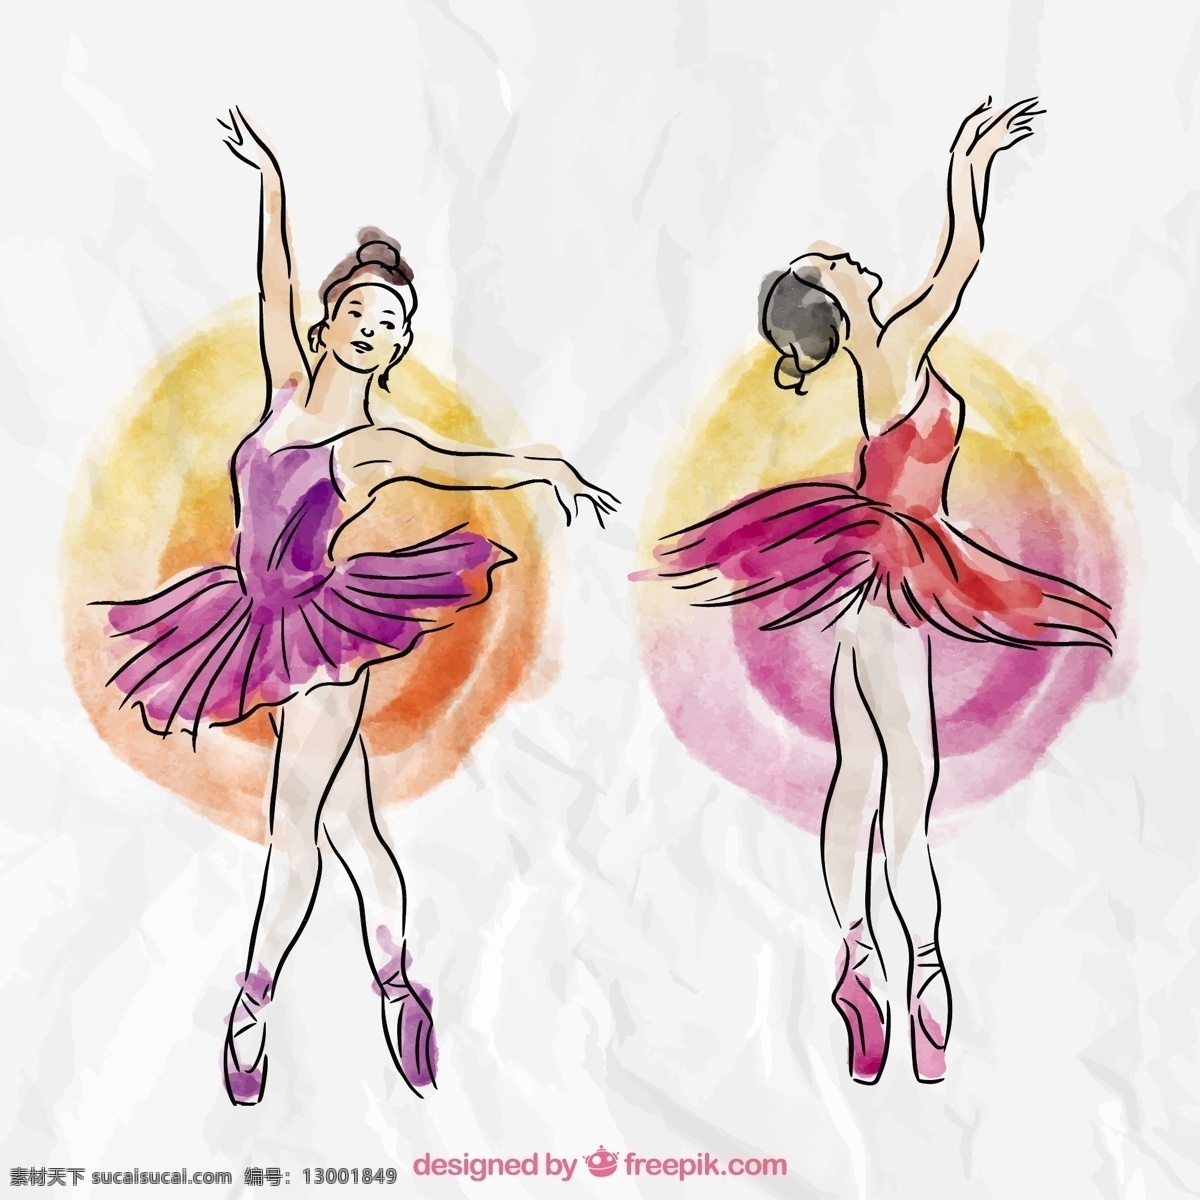 水彩 风格 舞者 手 手绘 舞蹈 艺术 绘画 芭蕾舞 艺术家 舞蹈家 芭蕾舞演员 移动 运动 草图 素描 不同